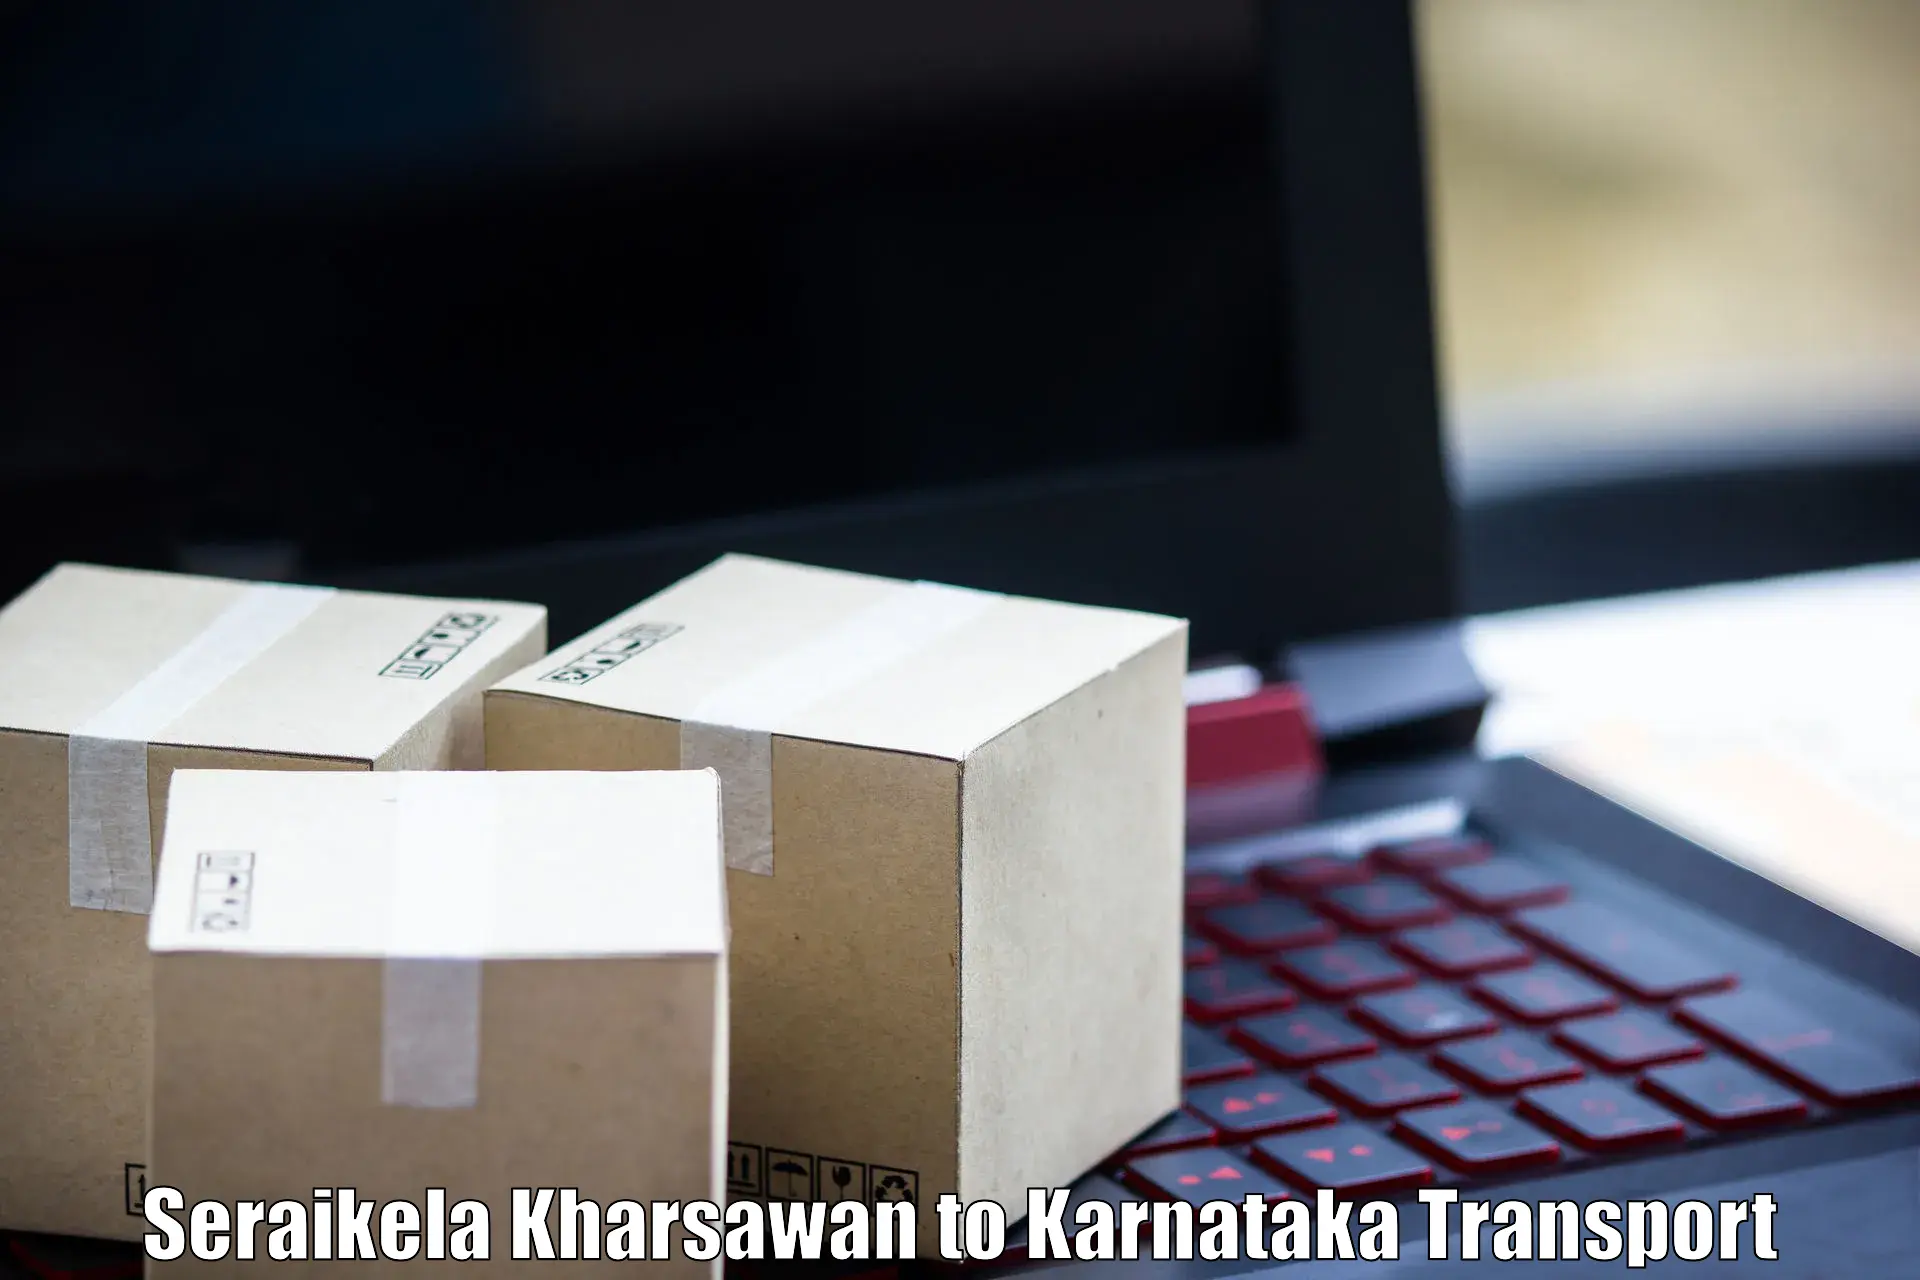 Bike shipping service Seraikela Kharsawan to Saundatti Yallamma